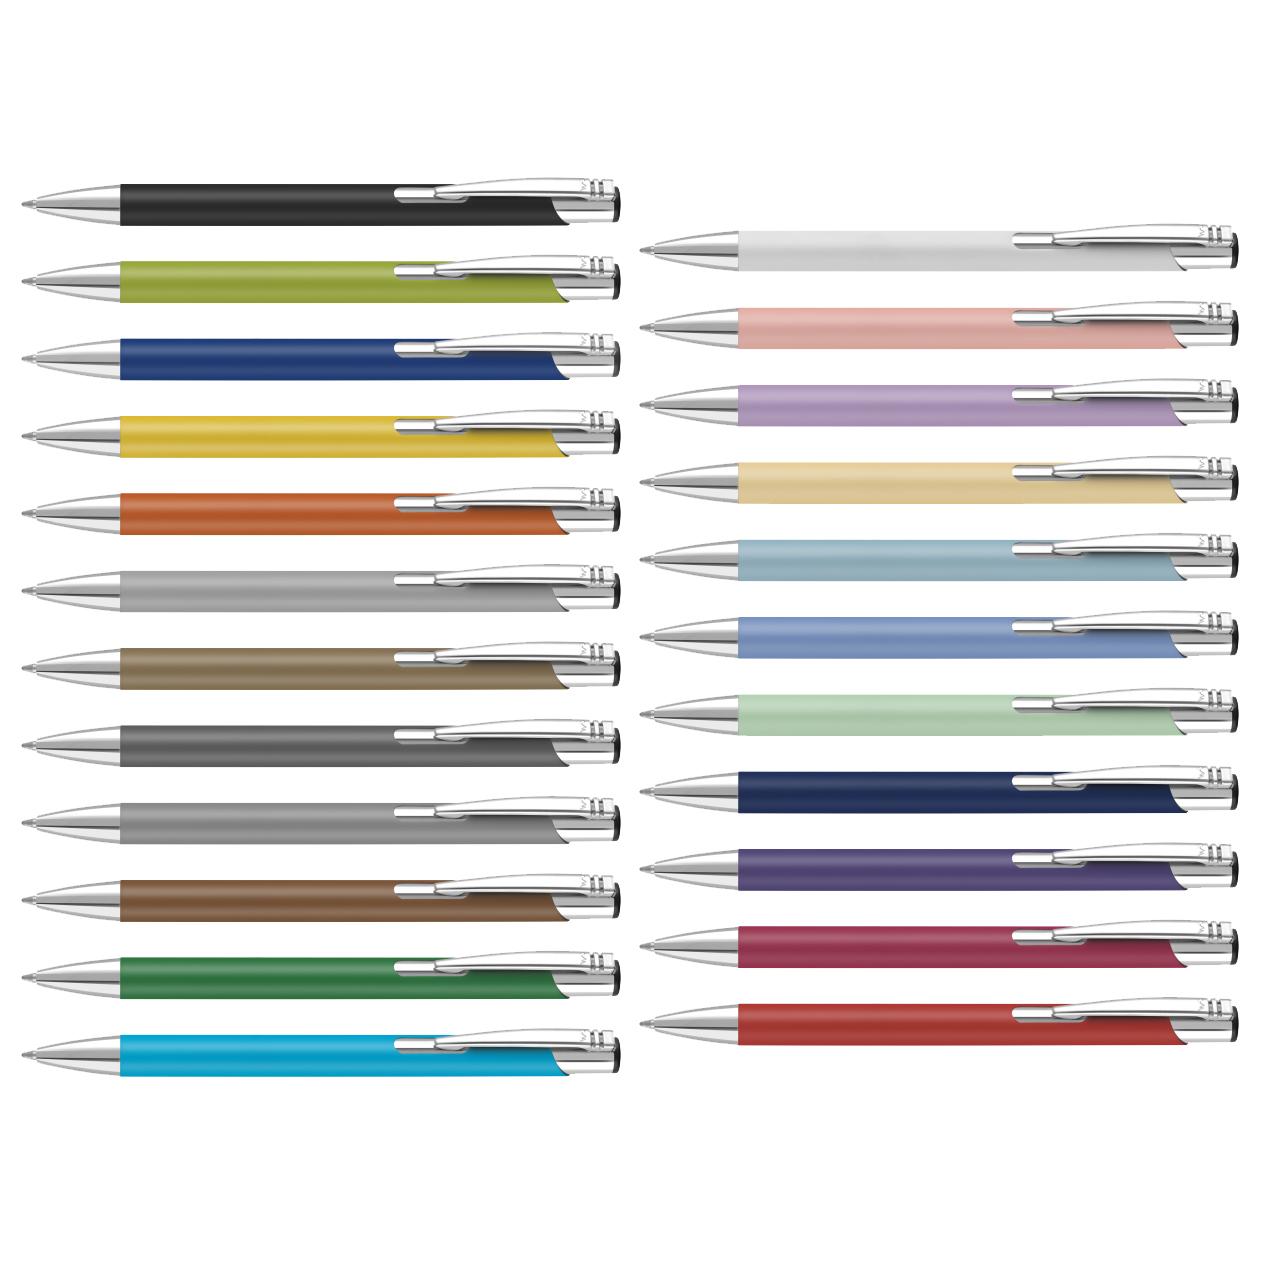 Soft touch metal pen colour choice